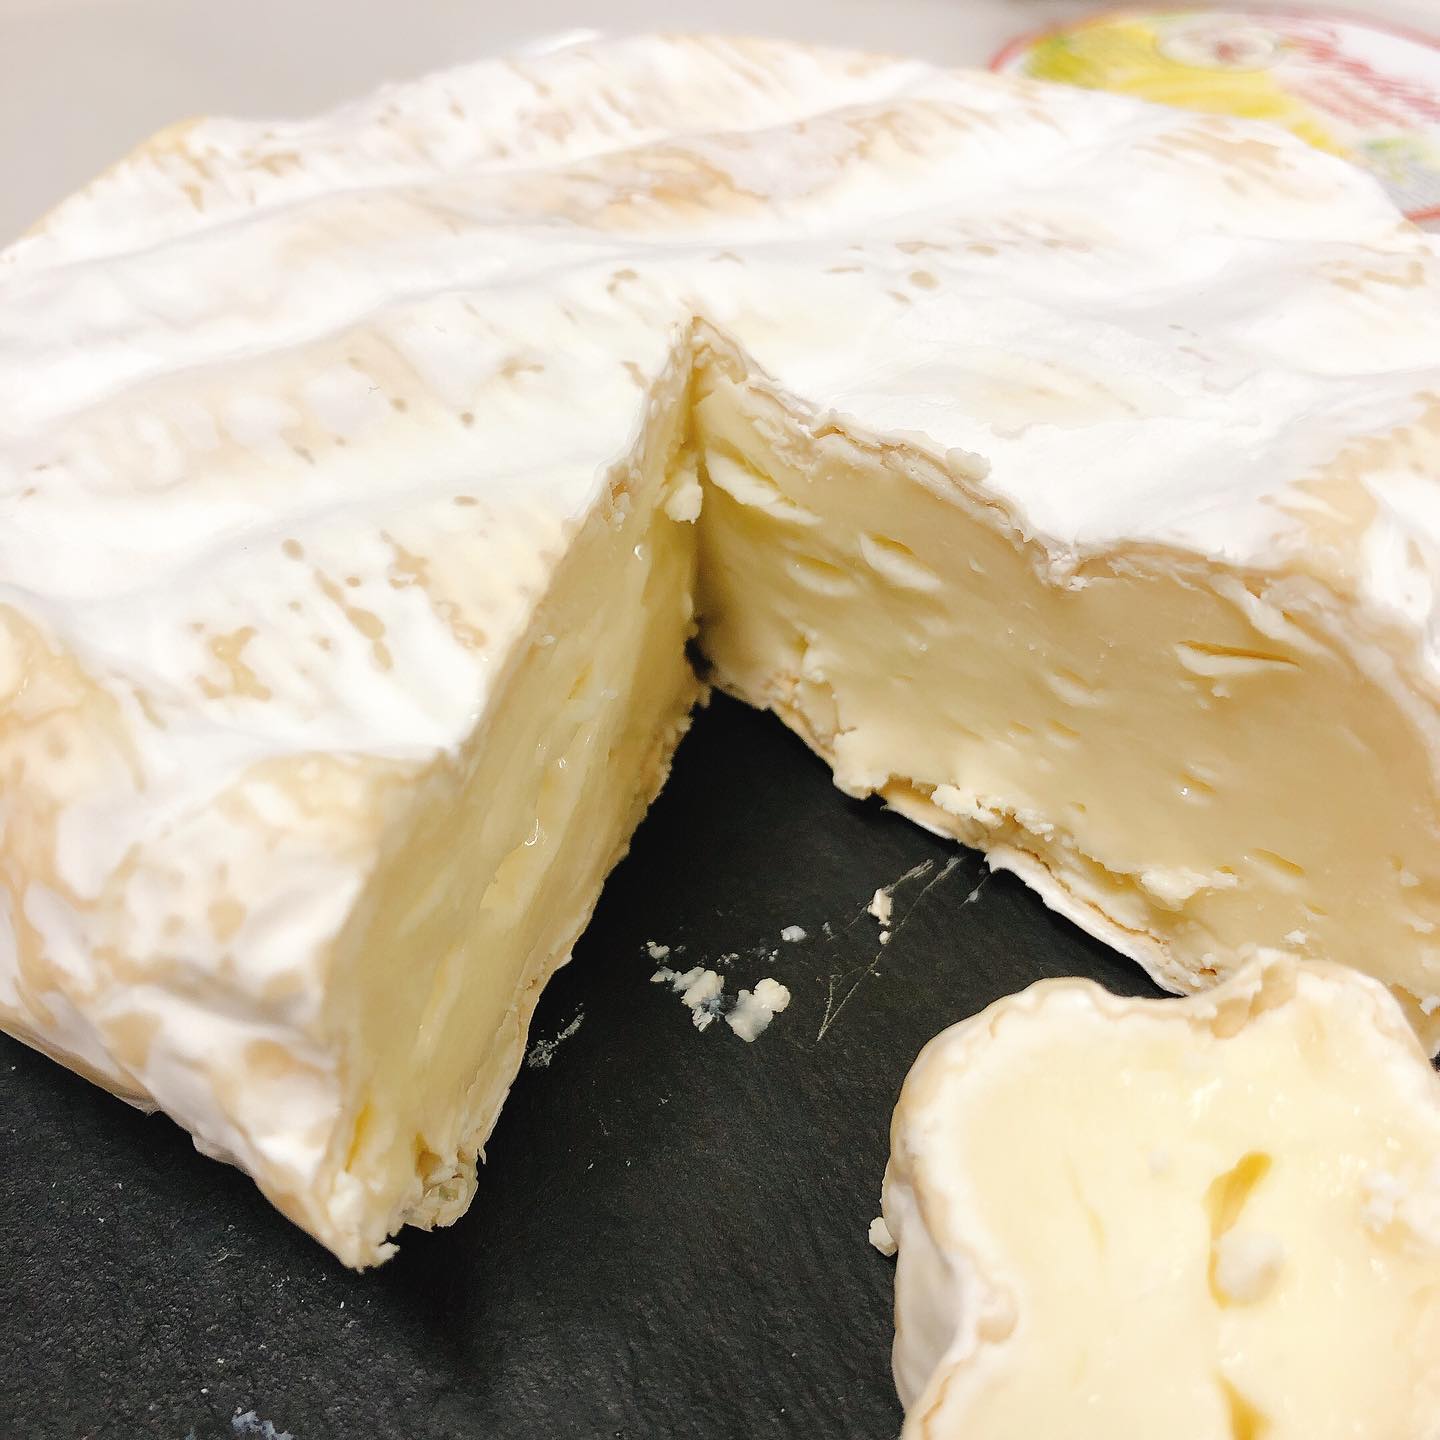 今月のオススメチーズその2

"パリエッティン"

イタリア,ピエモンテ州の白カビチーズです。

牛乳、羊乳、山羊乳の3種のミルクを使って作られています。
それほどクセは無く優しい味わいで食べやすいチーズです。

珍しいイタリアの白カビチーズおすすめです

#宅飯　 
#カウンター席　あります
美味しいグラスワインあります
#肉の盛り合わせ　 #手打ちパスタ　 #イタリア料理　
パラヴィーノワインアカウント
@paravino.vino